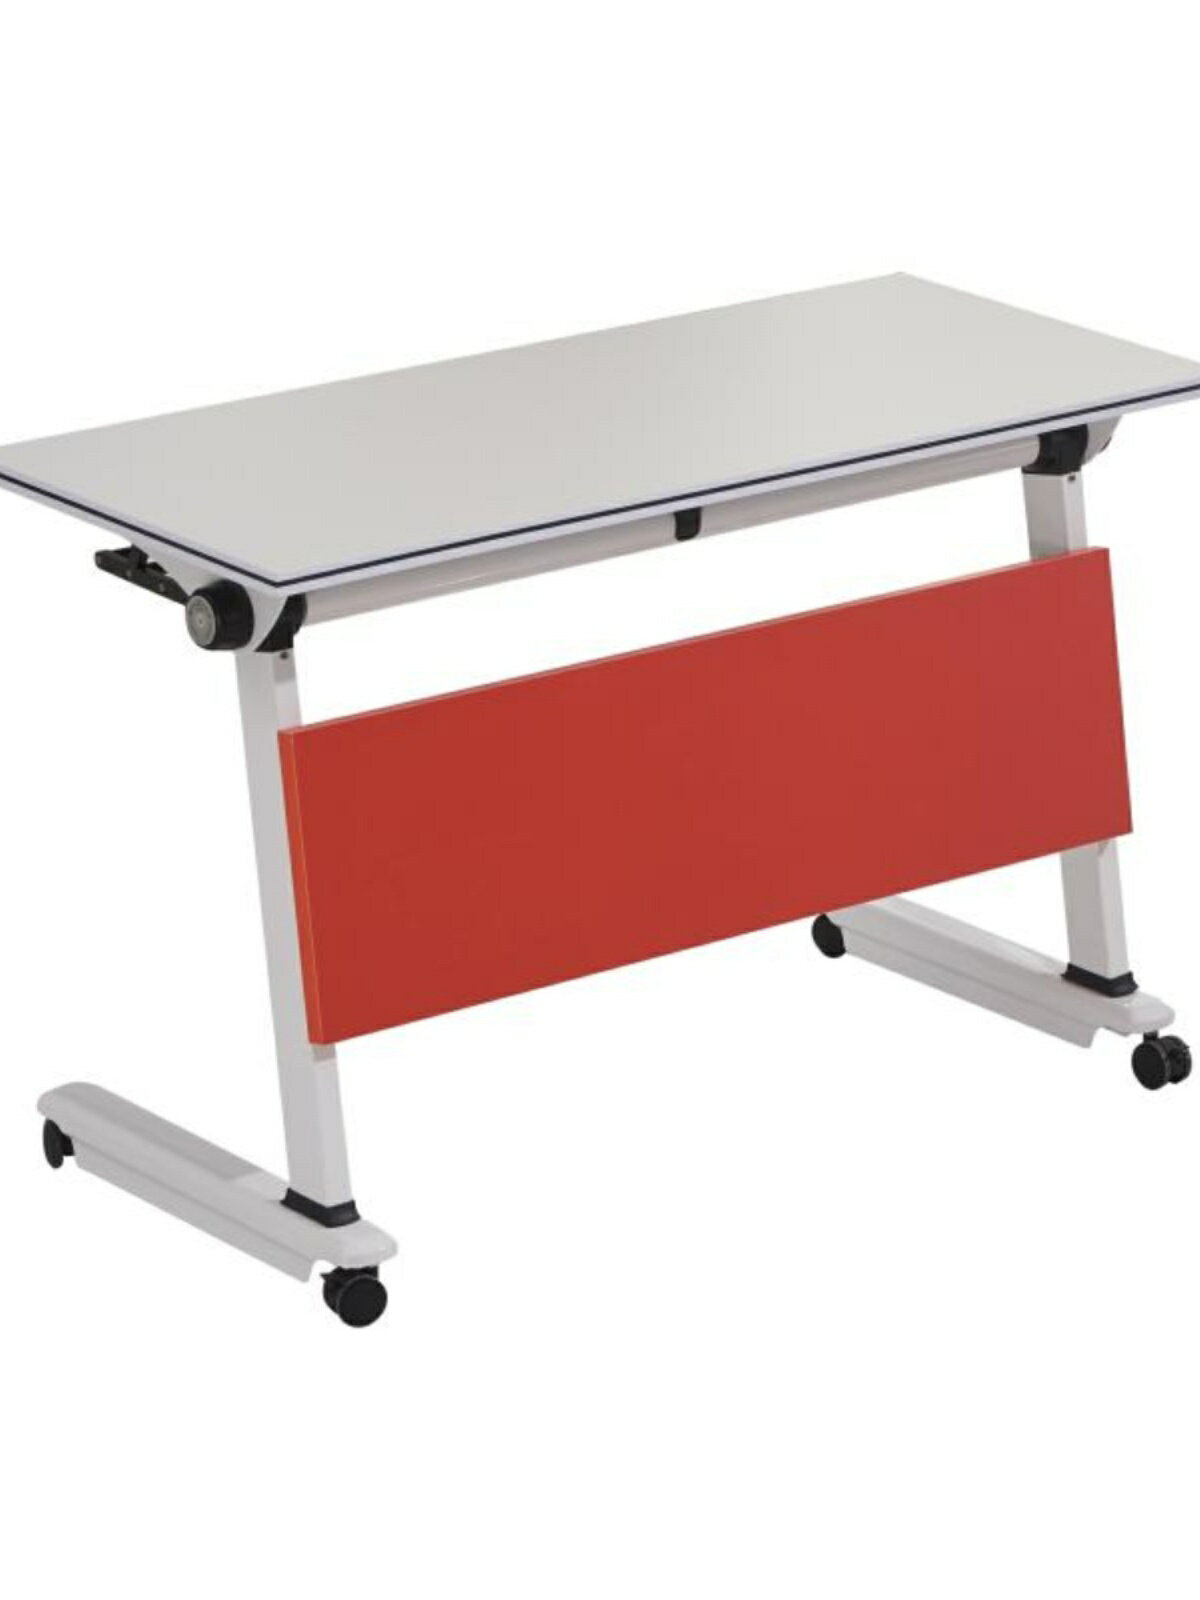 簡約折疊桌培訓桌組合拼接橢圓形會議桌辦公長條桌學生課桌椅滑輪